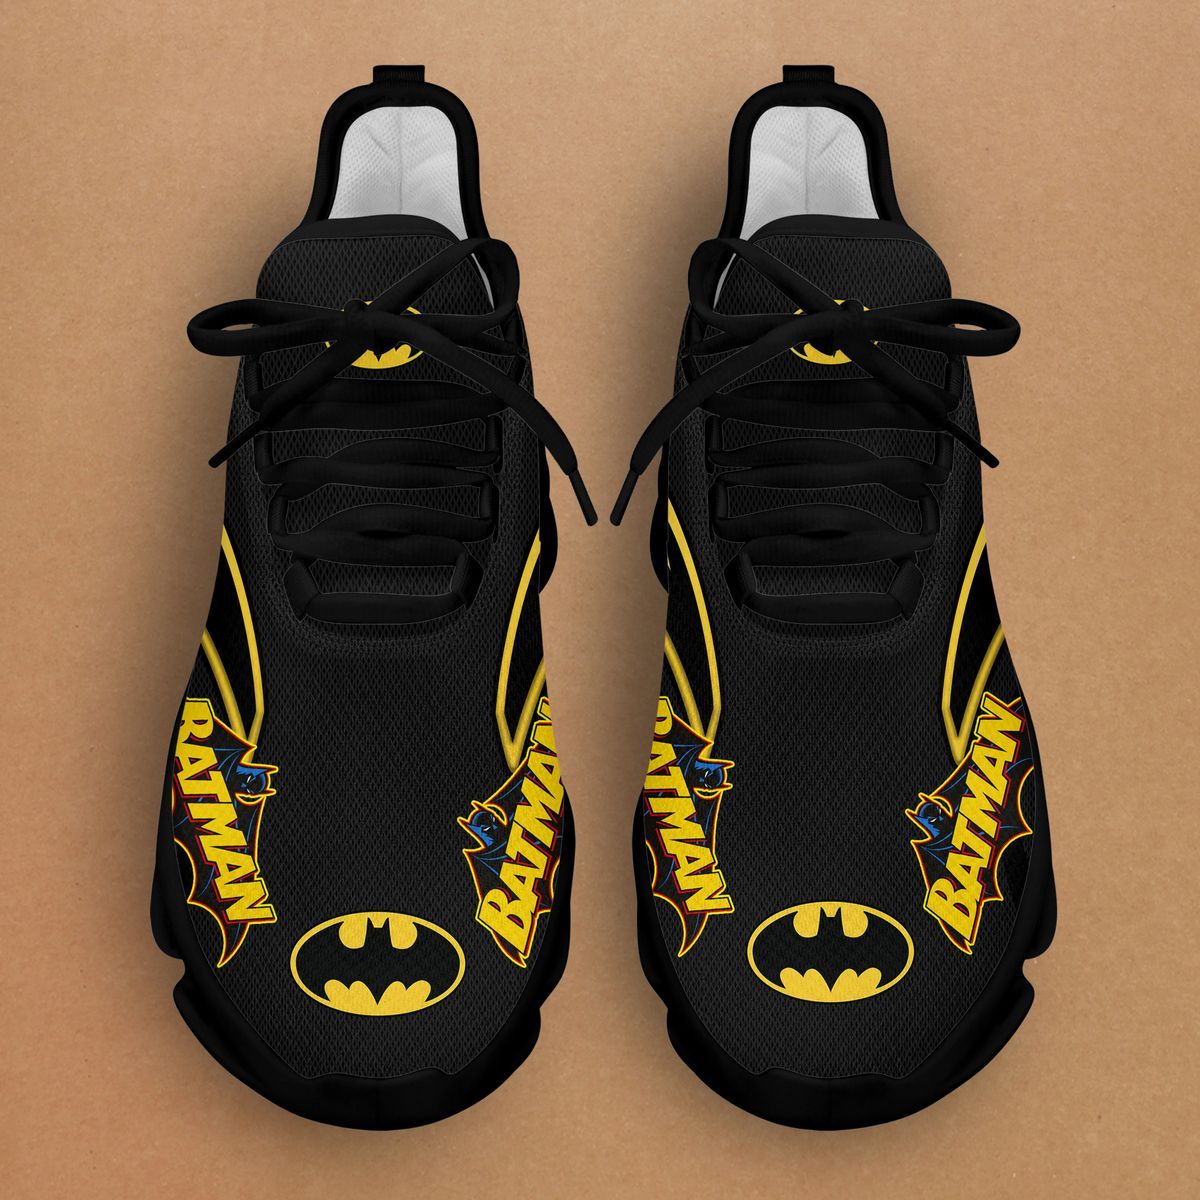 Batman Clunky Max soul shoes 2